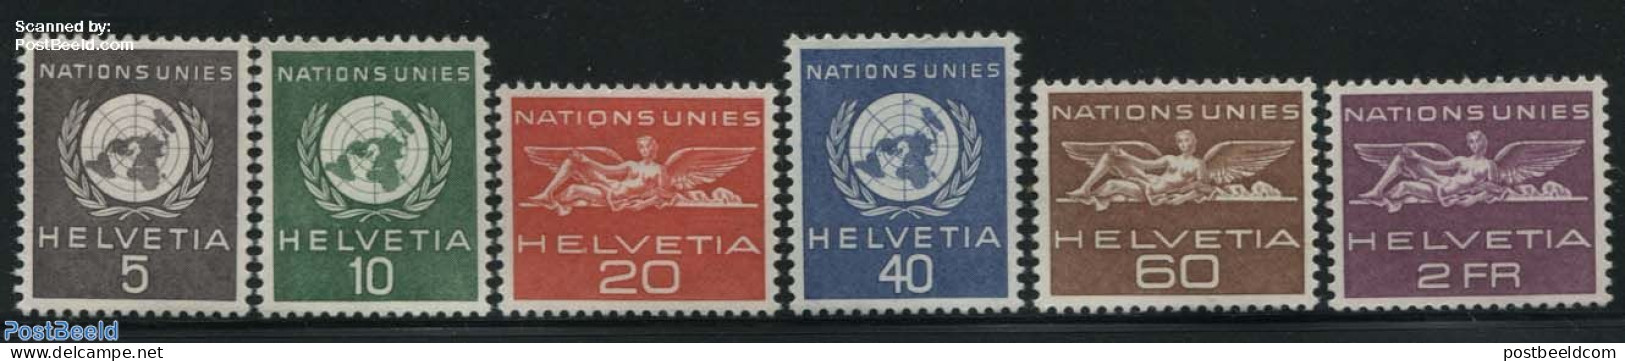 Switzerland 1955 United Nations 6v, Unused (hinged), History - United Nations - Neufs